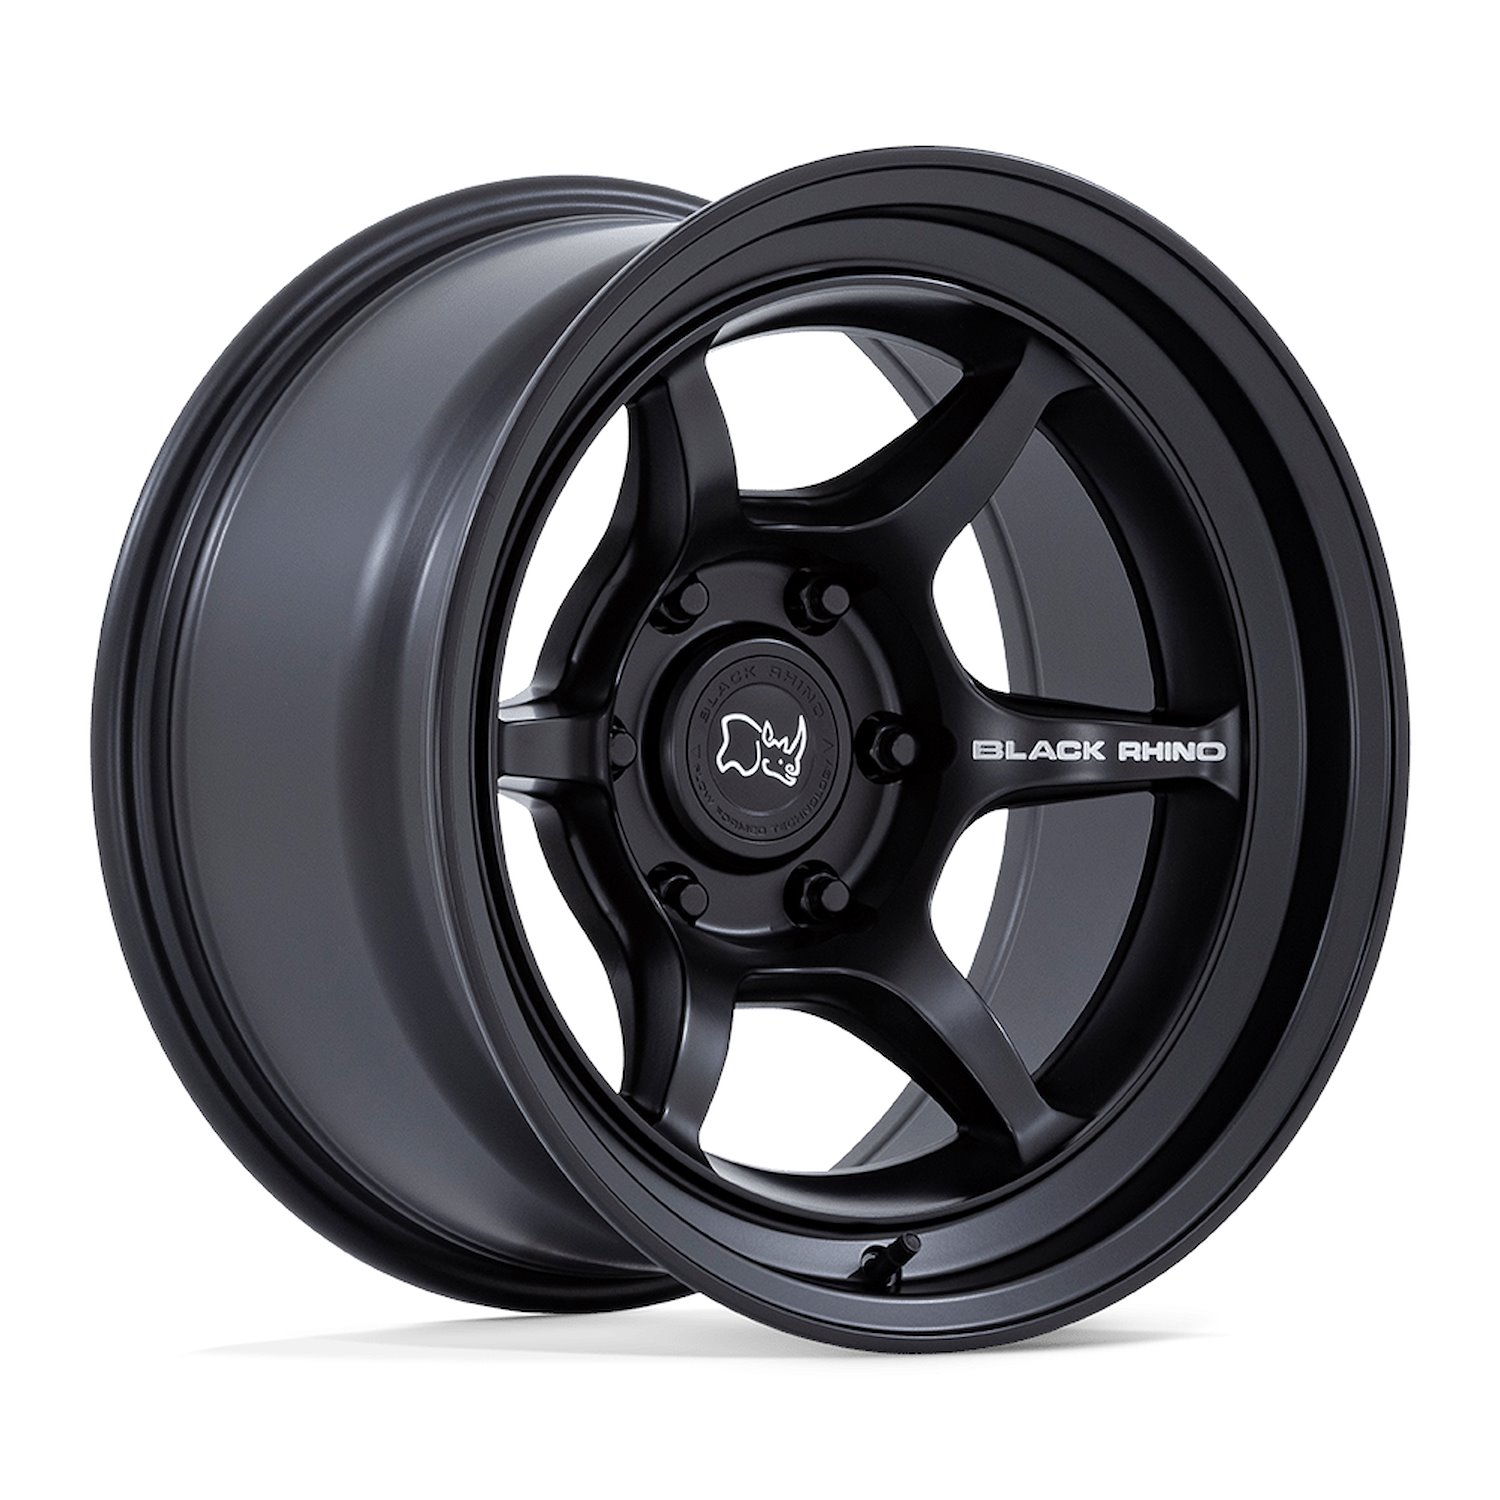 BR011MX16806810N SHOGUN Wheel [Size: 16" x 8"] Matte Black